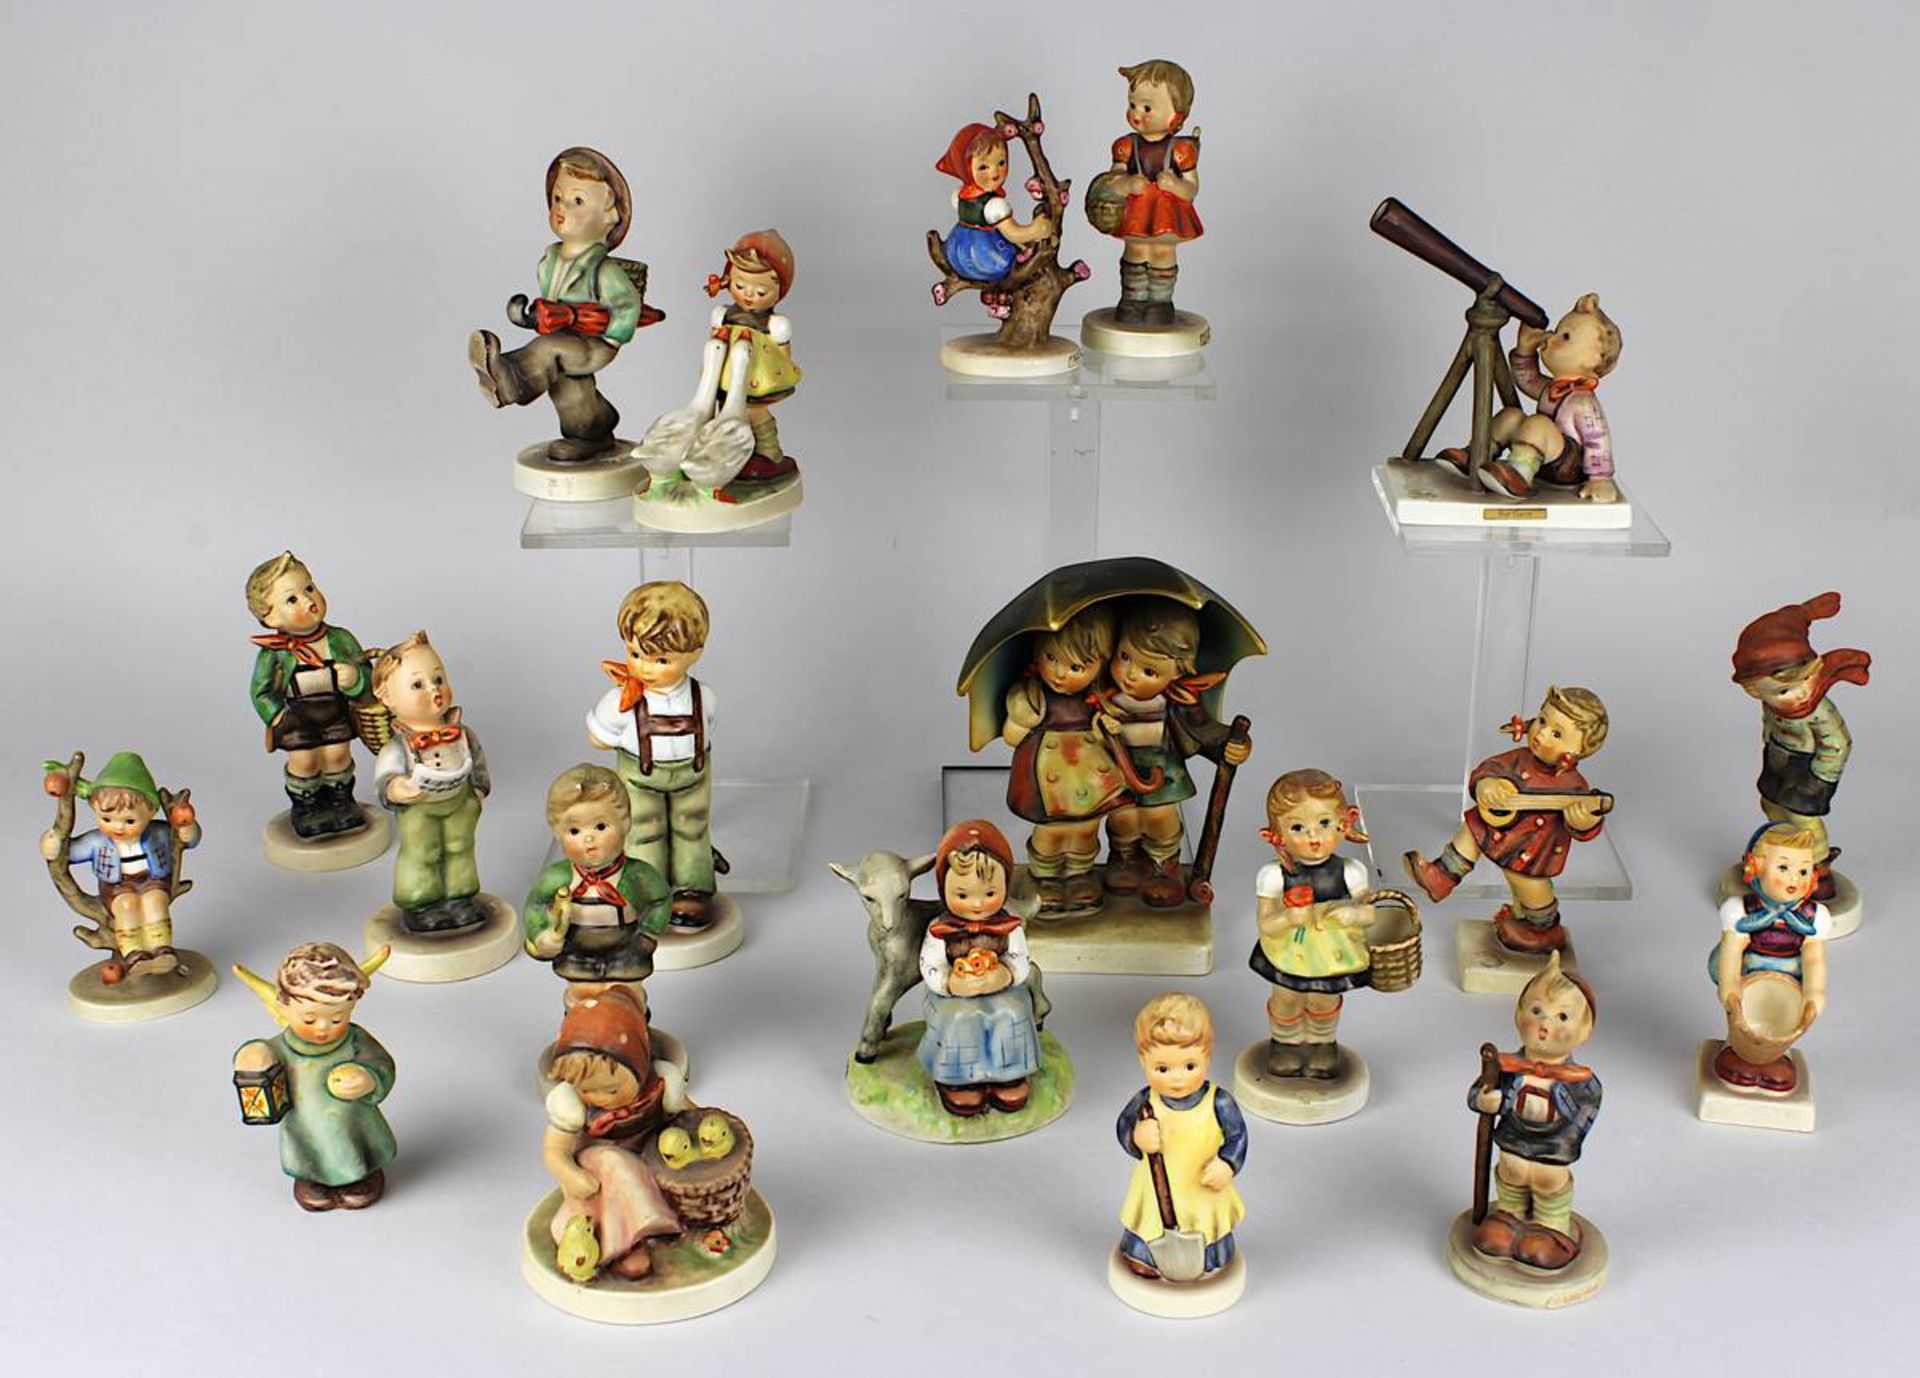 20 Hummel-Figuren, Hummel u. Goebel, 1950 bis 2000, Keramikfiguren, farbig staffiert, u.a. "